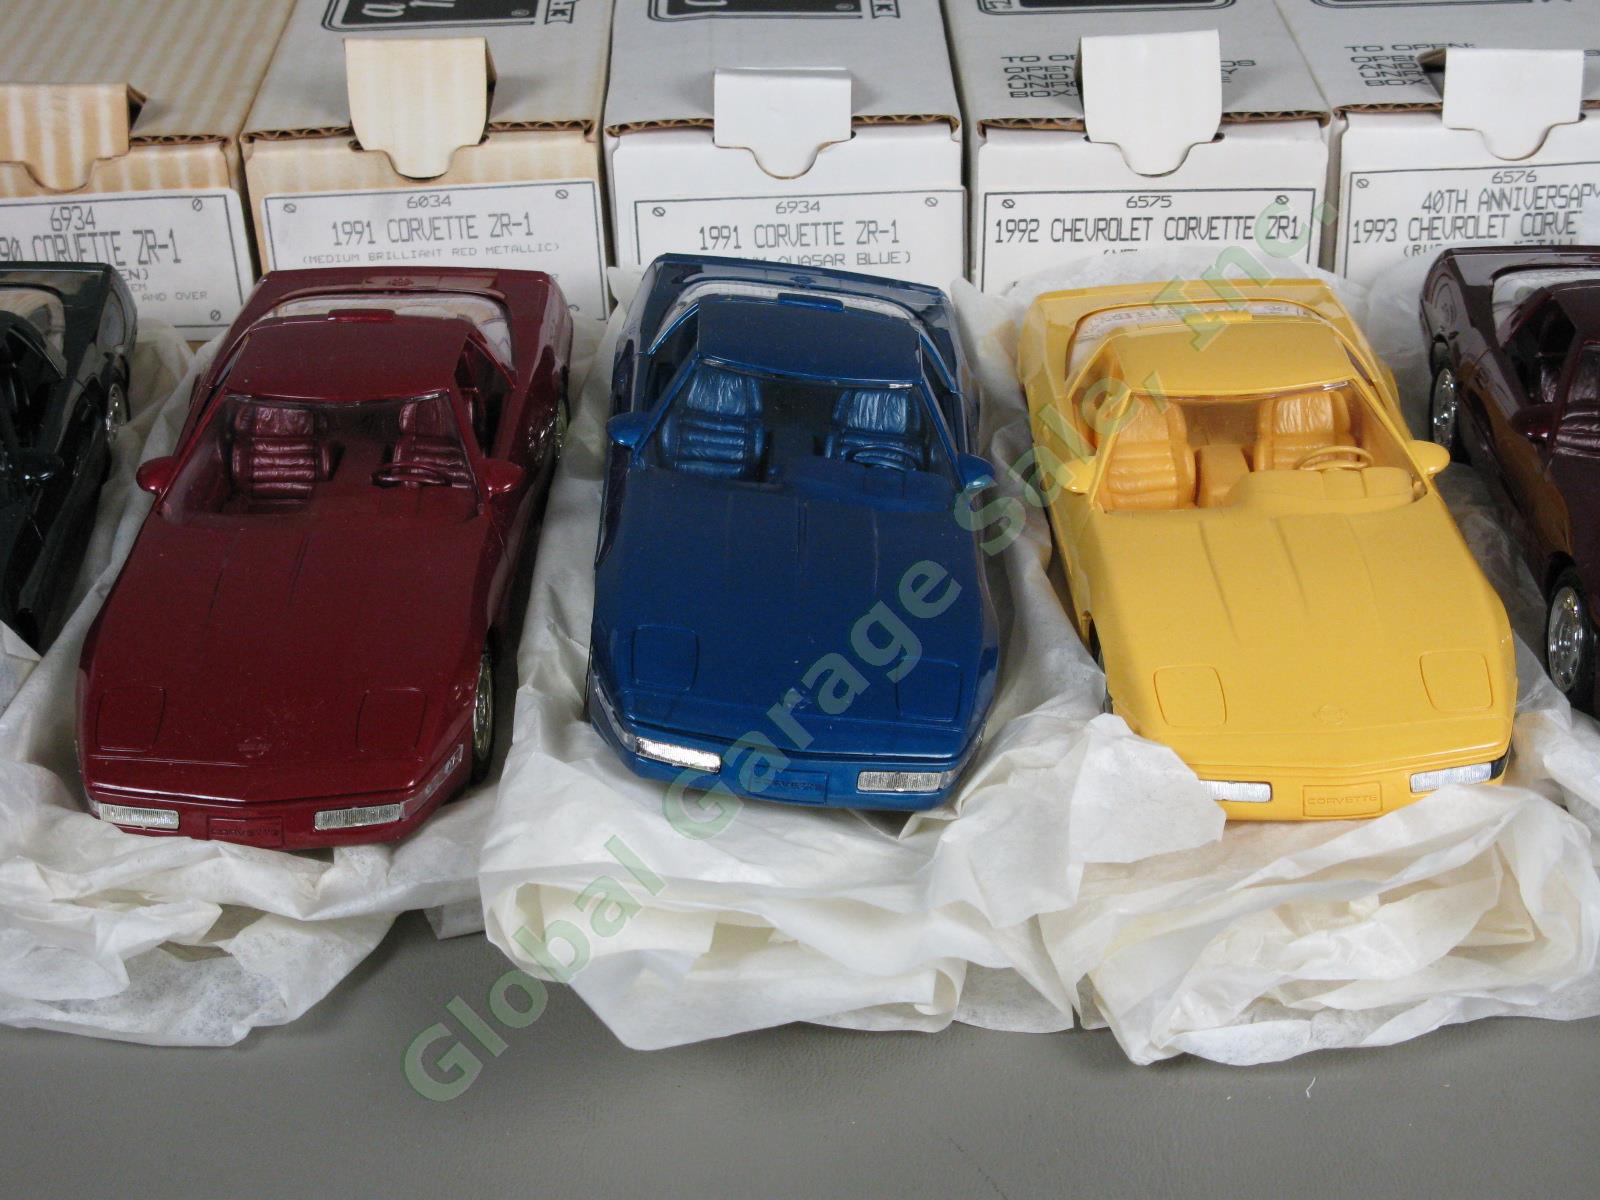 9 Ertl Chevrolet Corvette Plastic Dealer Promo Model Car Lot Set ZR-1 1989-95 NR 3